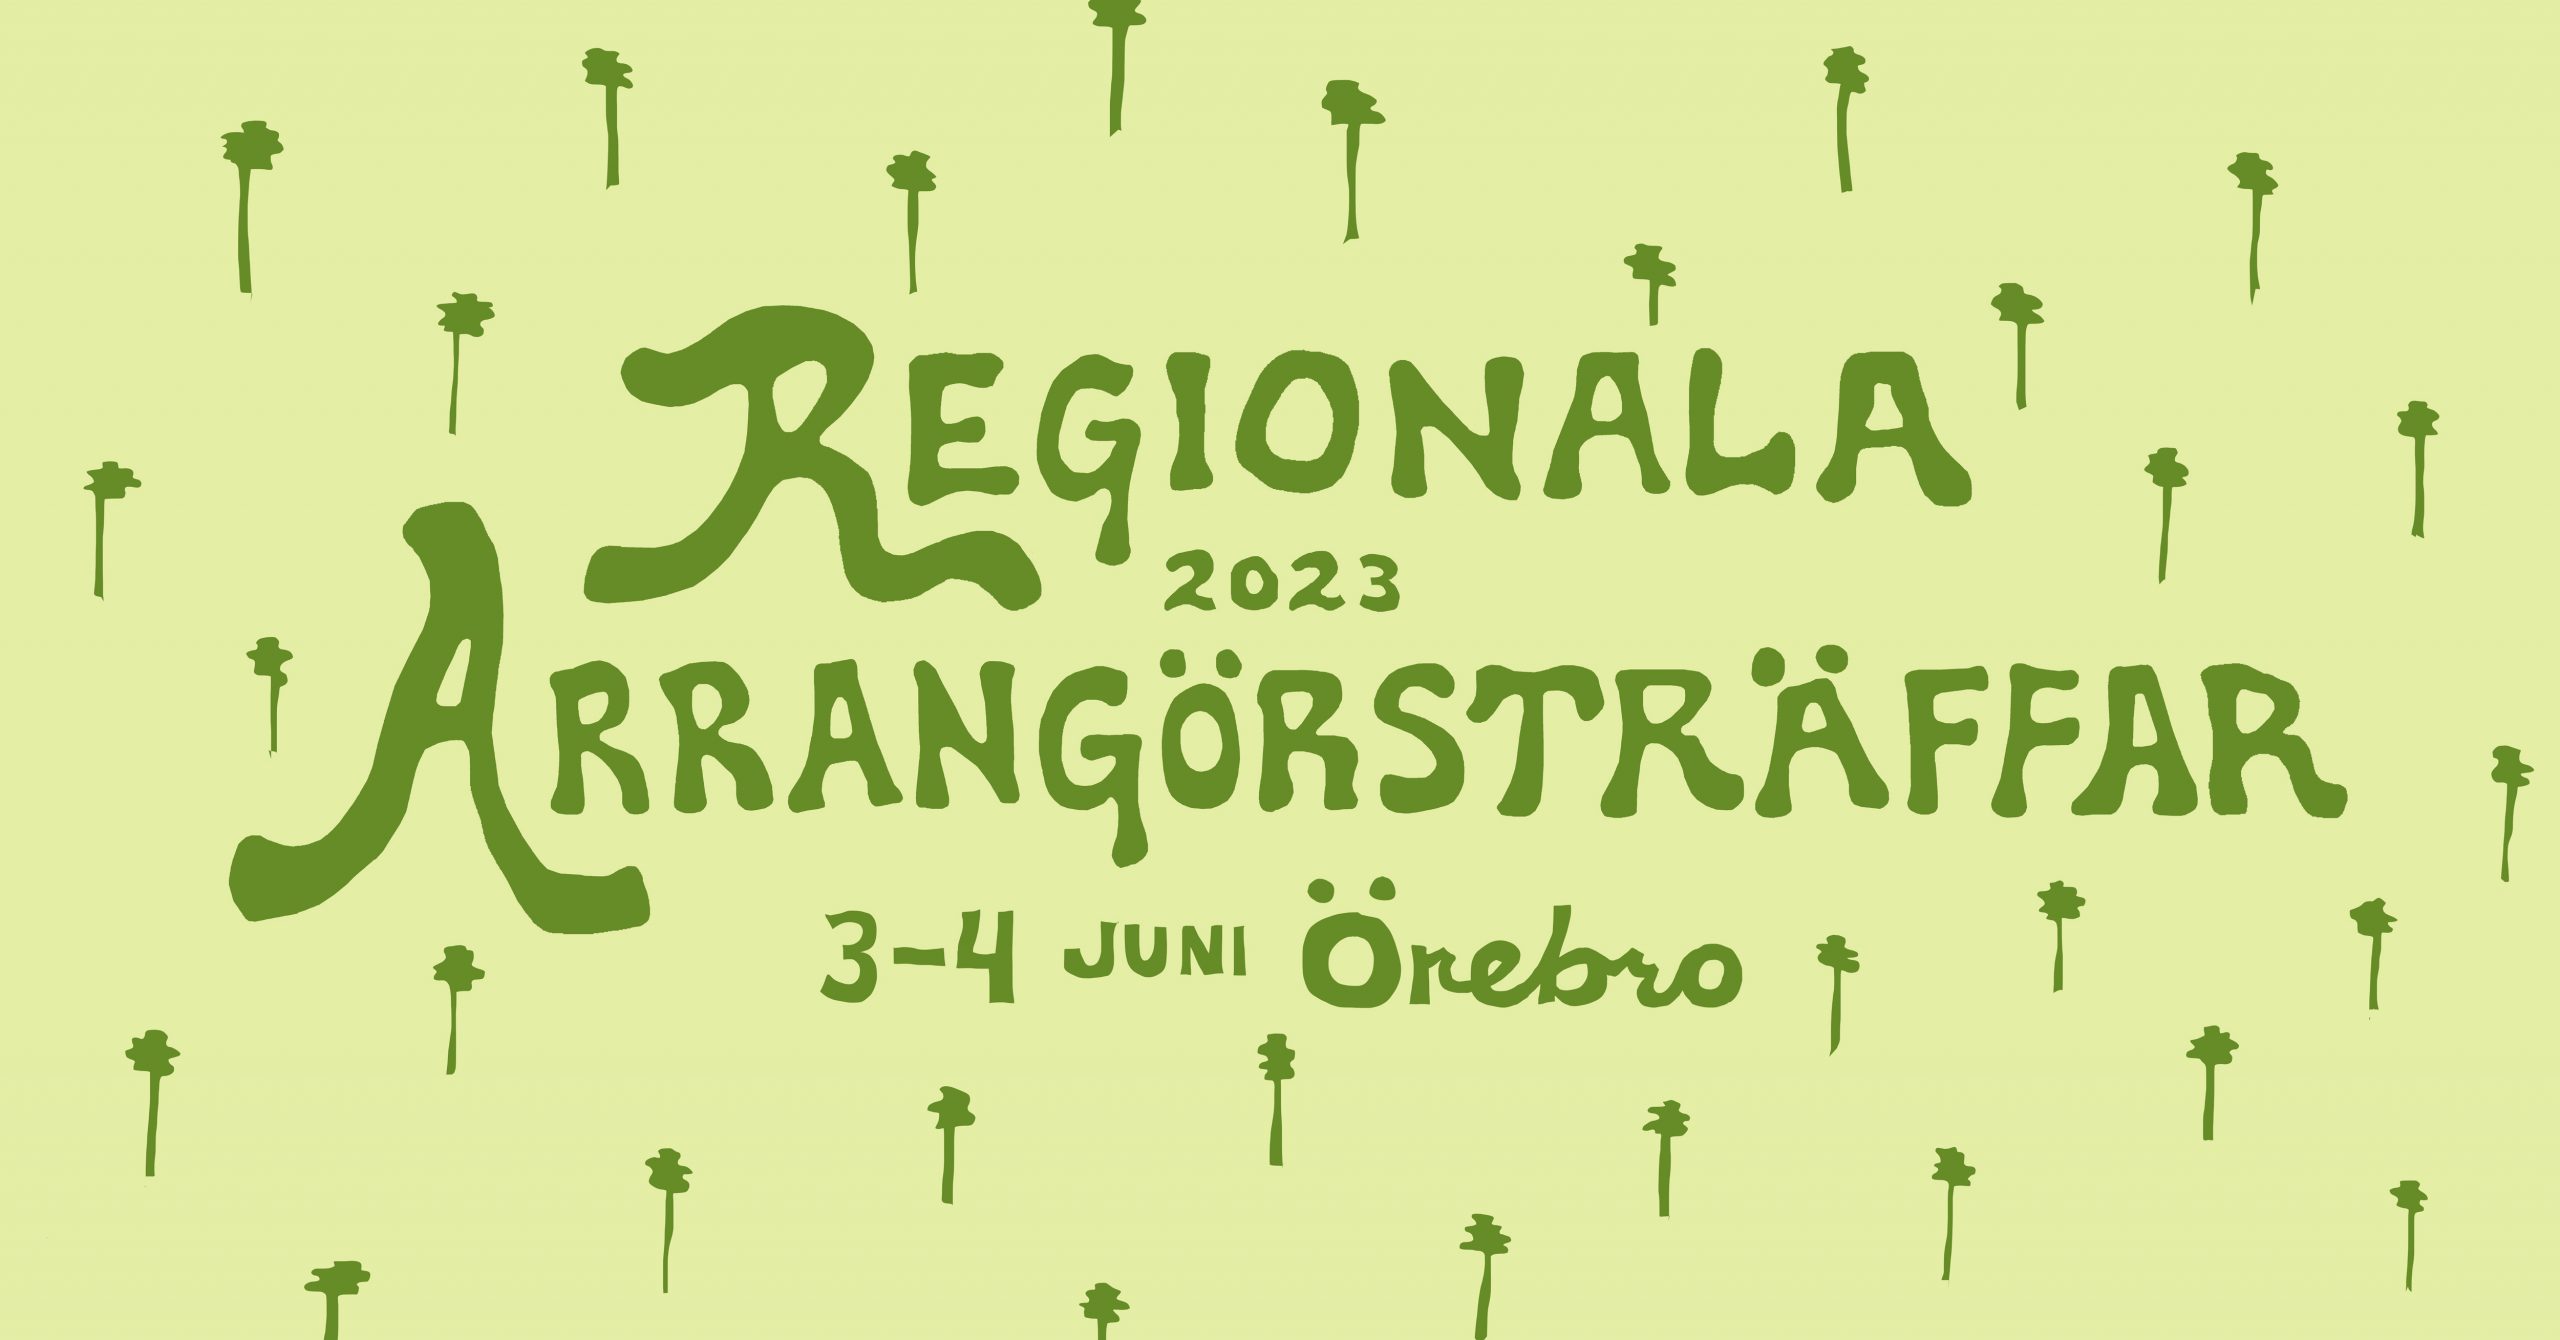 Regional Arrangörsträff i Örebro, 3-4 juni